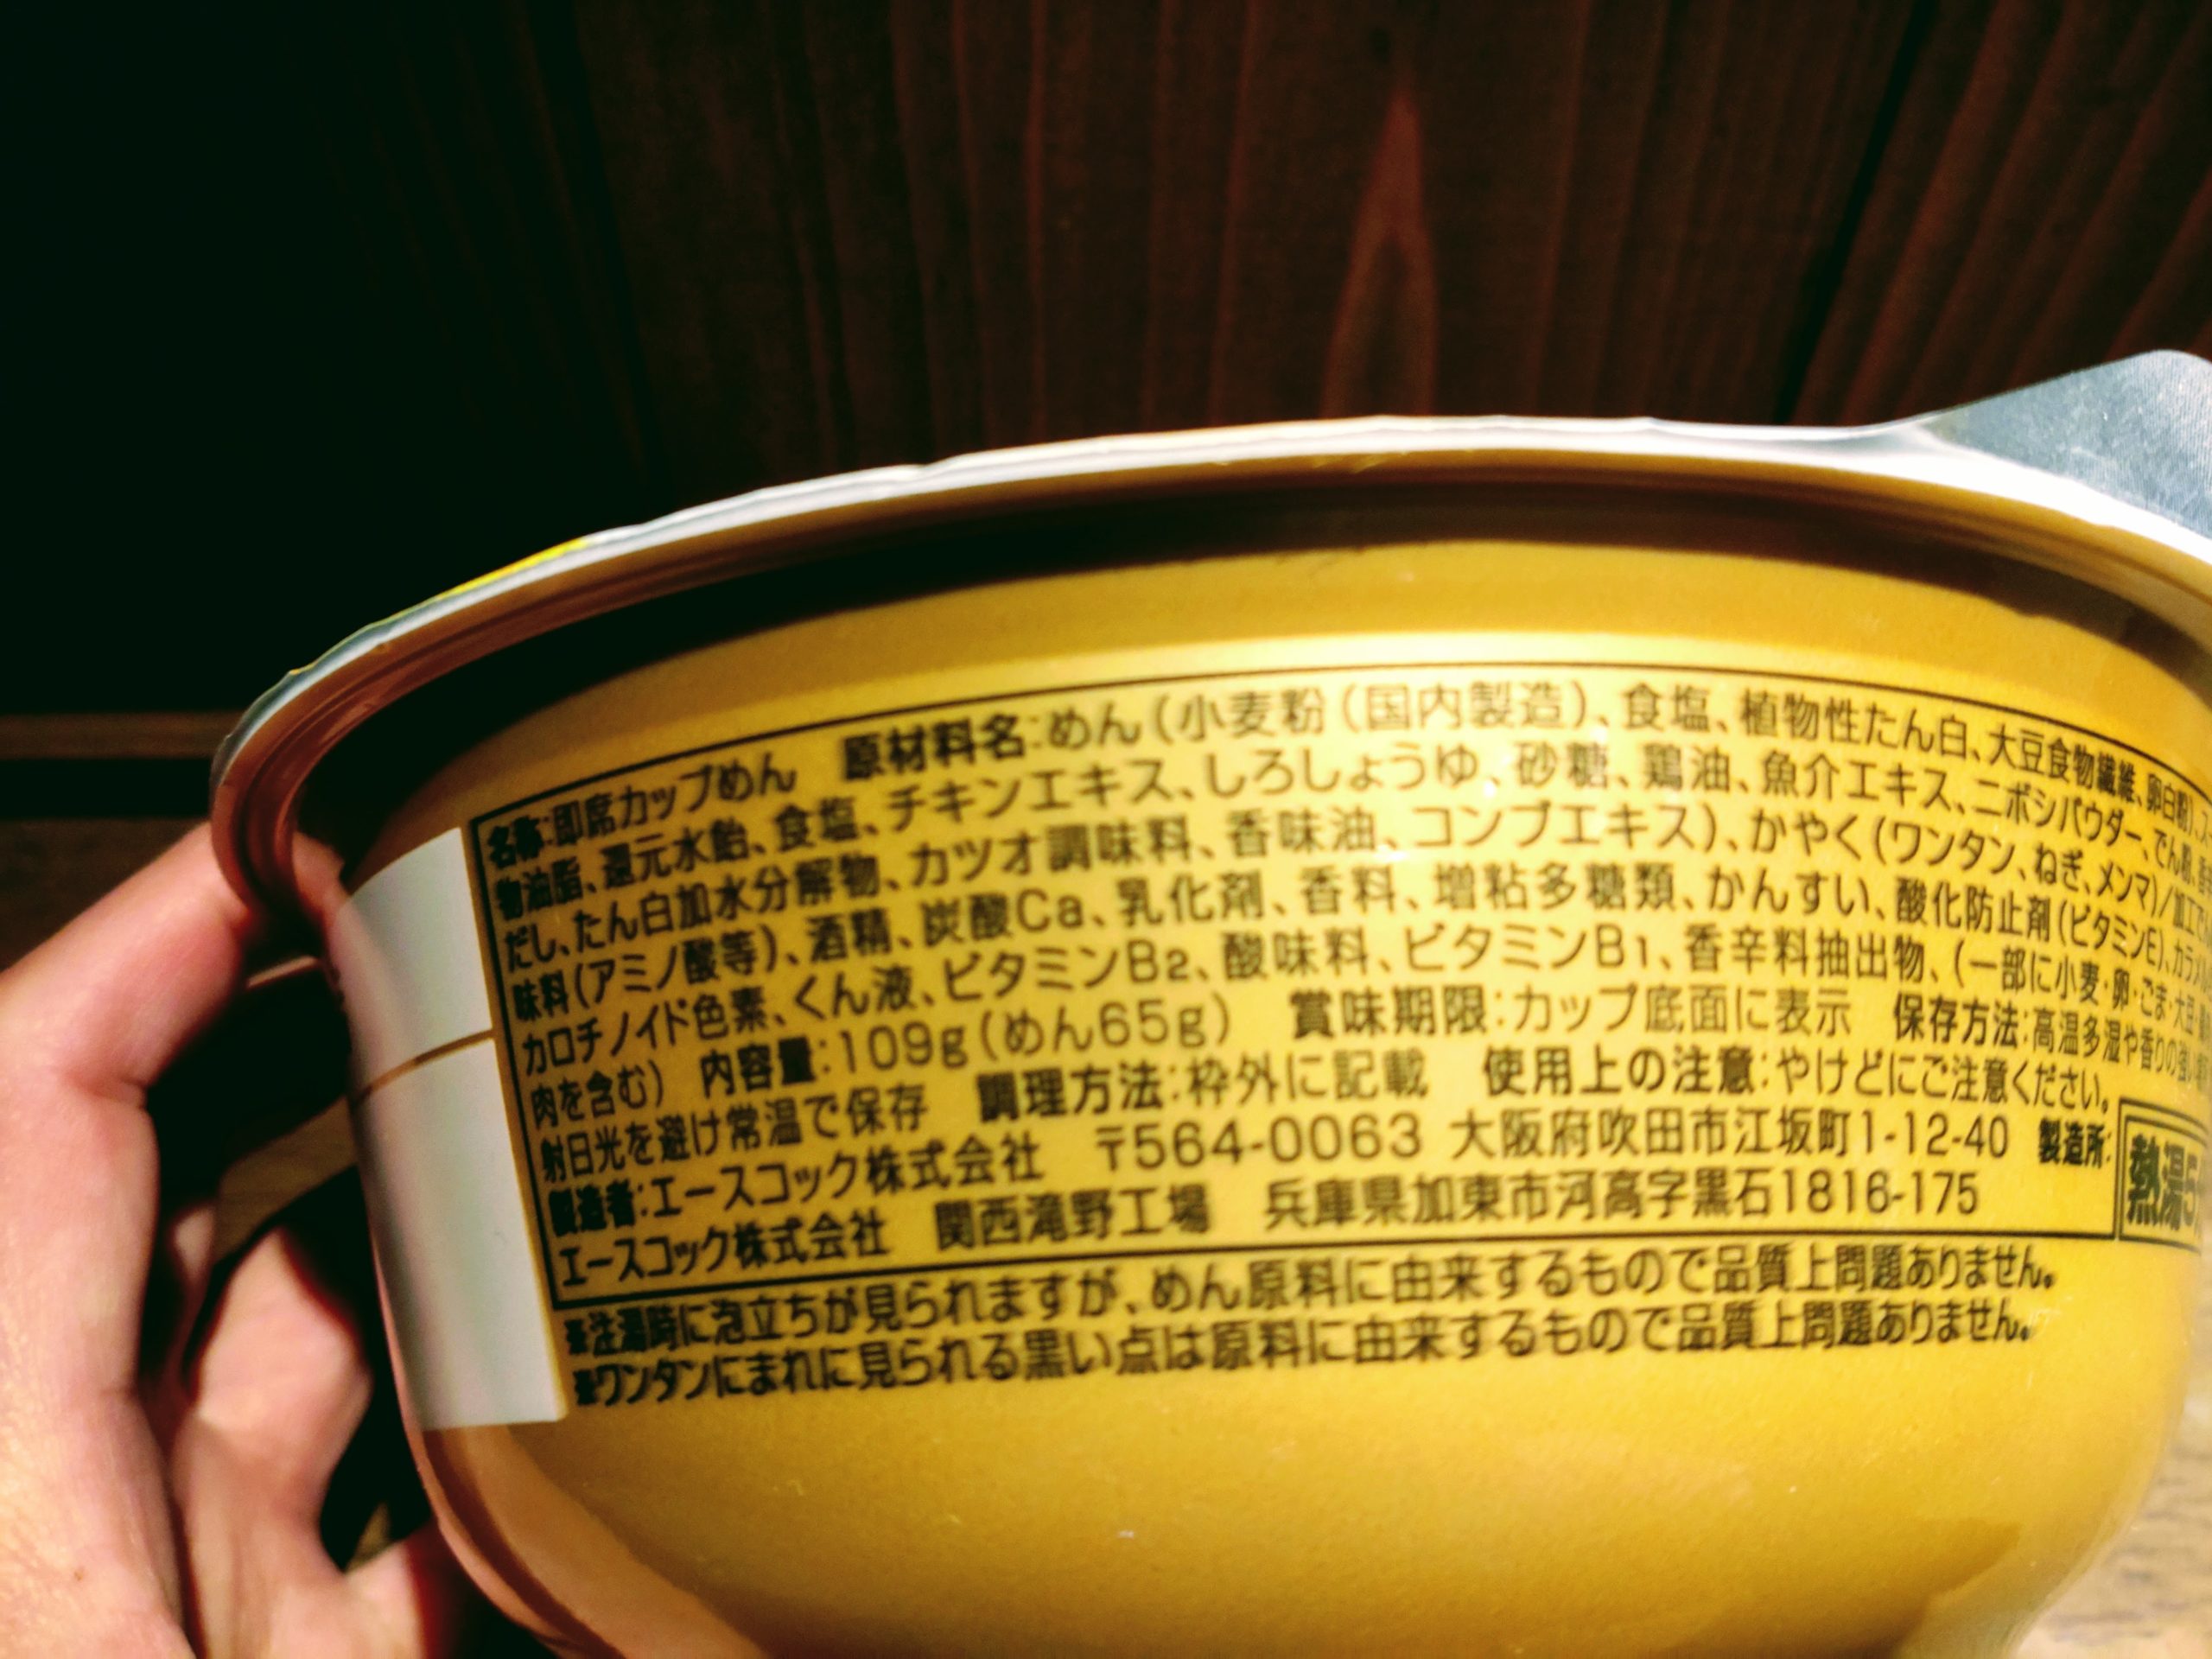 ワンタン麺の最高峰の店 八雲の一杯 ワンタン麺 白醤油味の原材料名と内容量